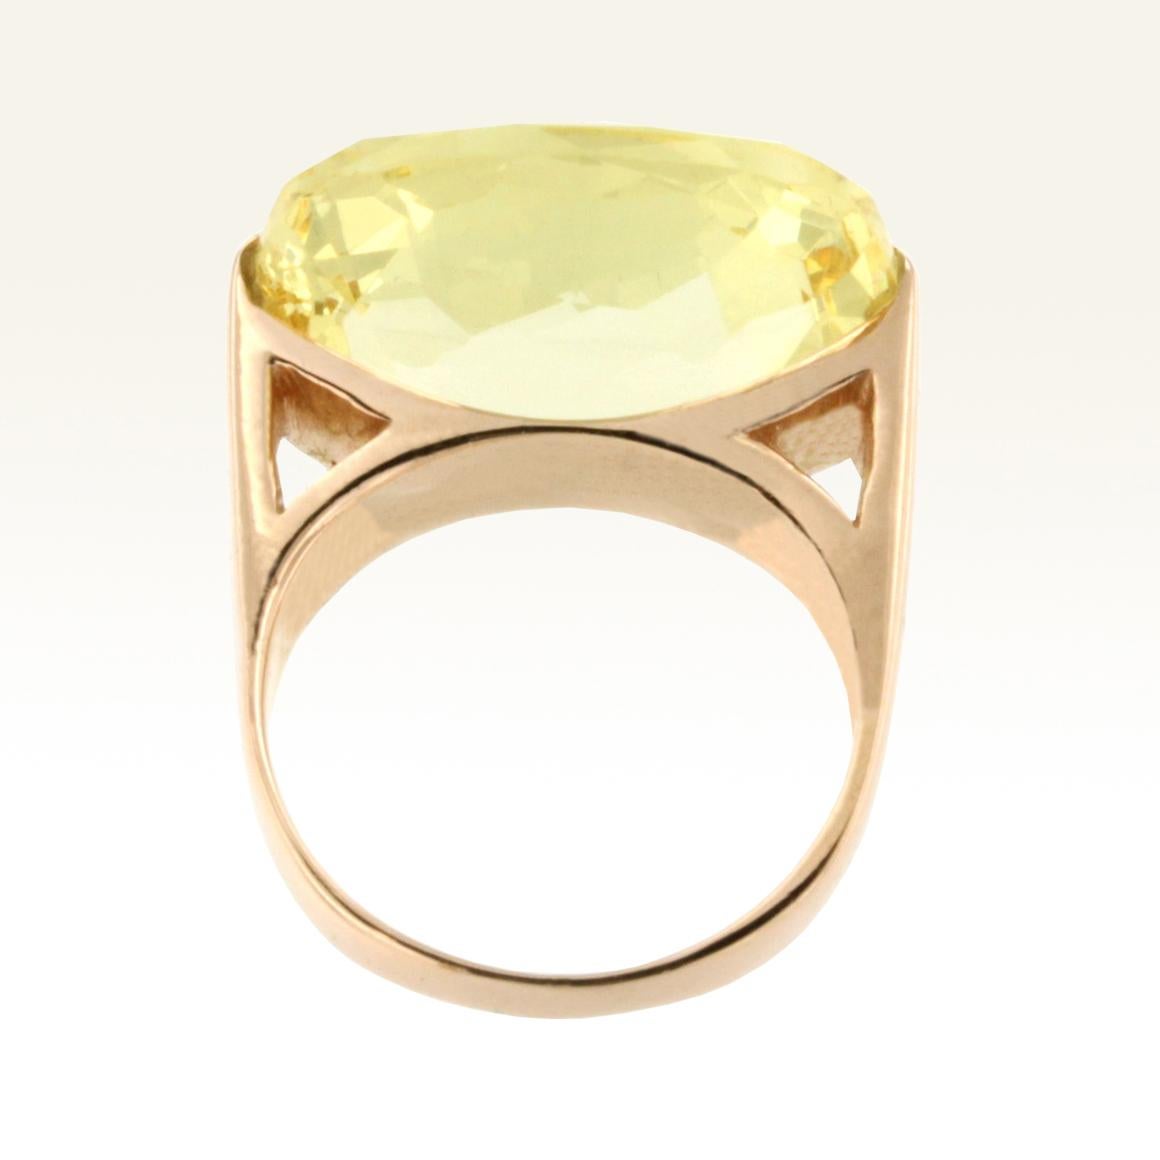 Modern 18 Karat Rose Gold with Lemon Quartz Ring